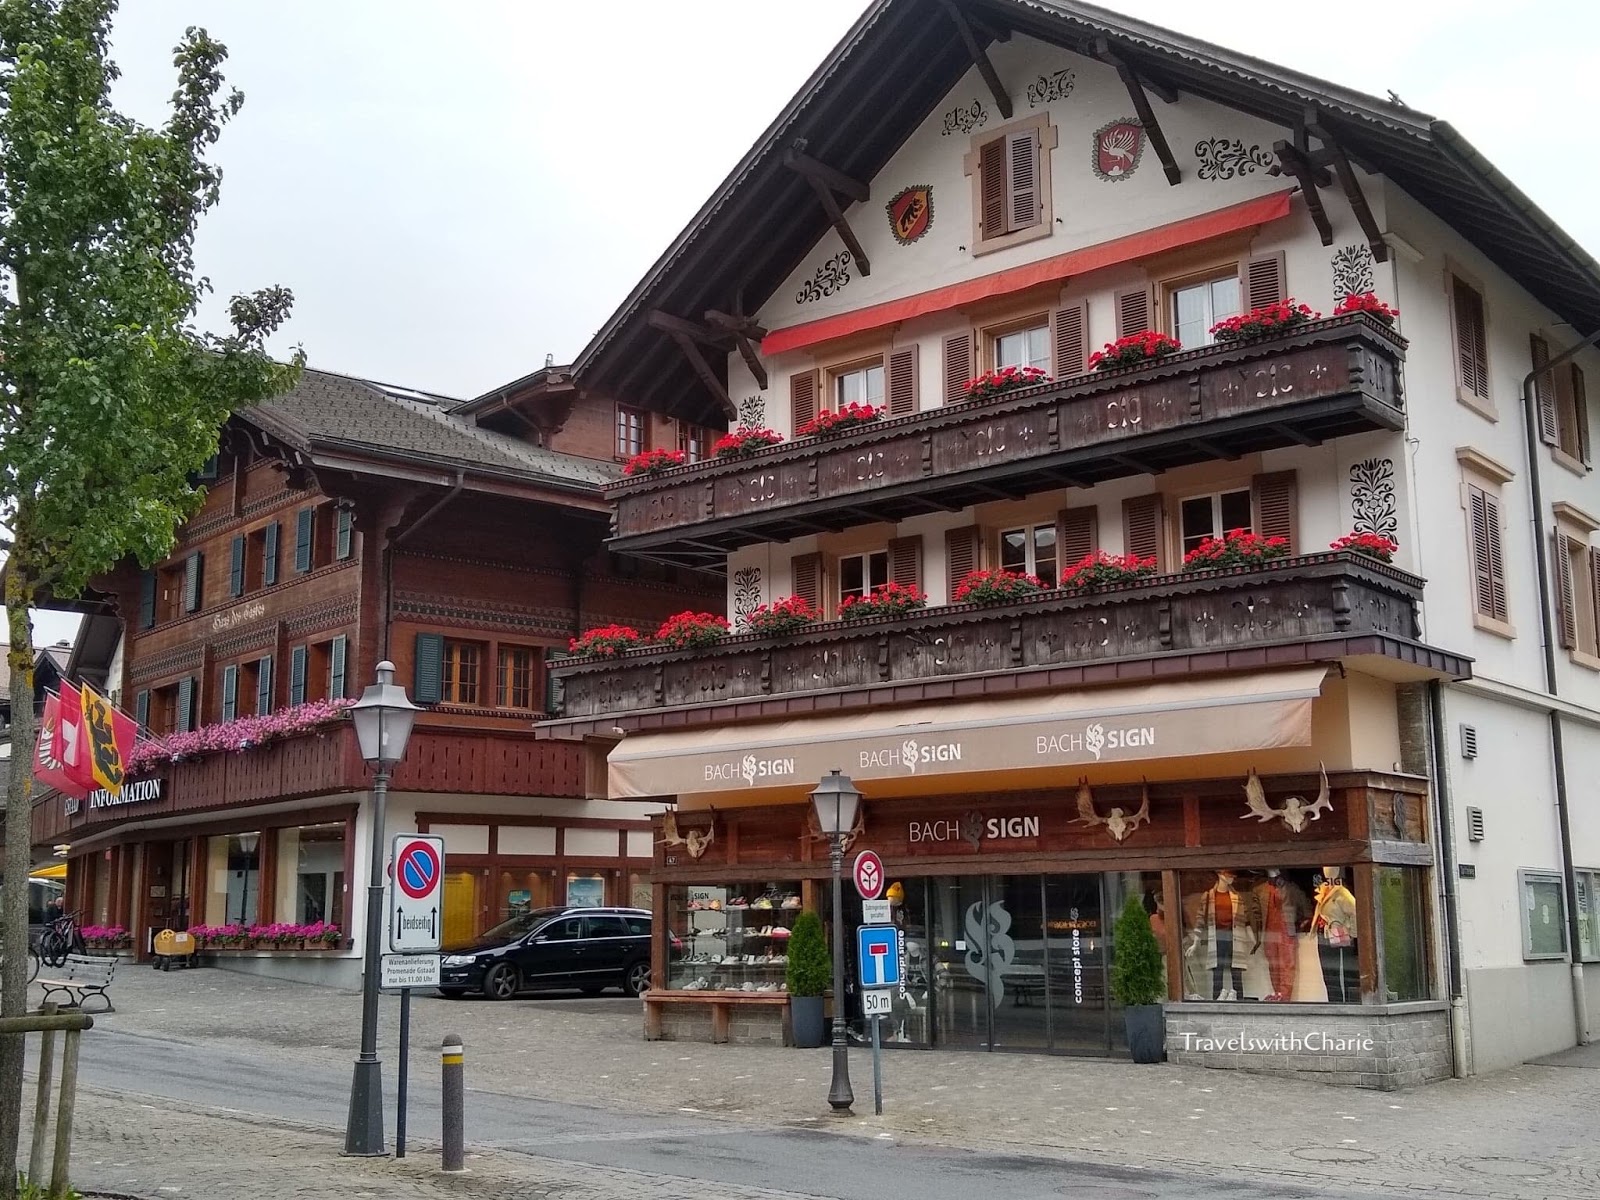 Louis Vuitton winter resort store in Gstaad 